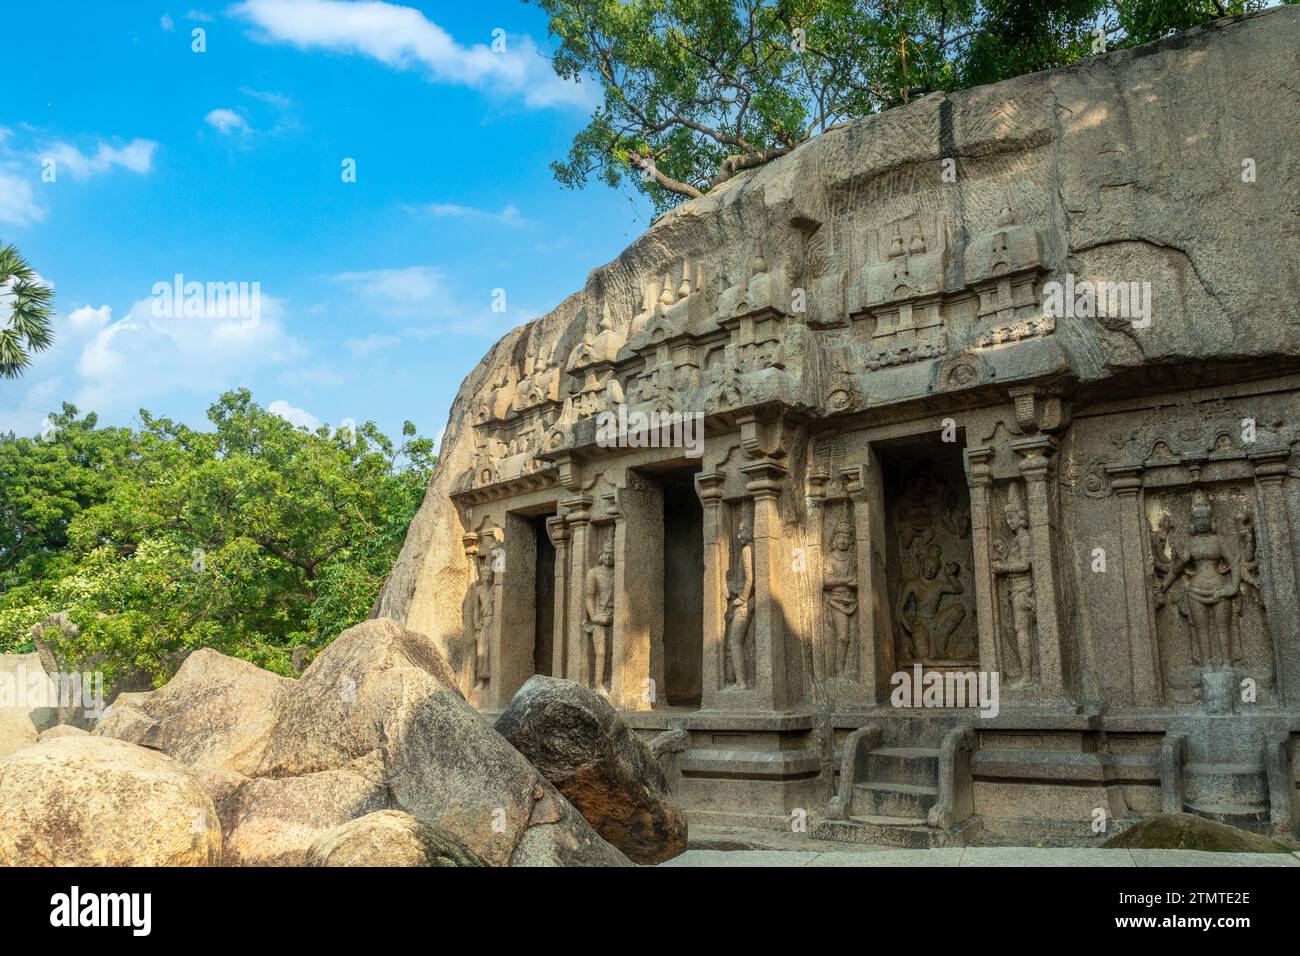 Thirumoorthi pierre sculptée temple de grotte avec décoration de statues anciennes, Mahabalipuram, région de Tondaimandalam, Tamil Nadu, Inde du Sud Banque D'Images